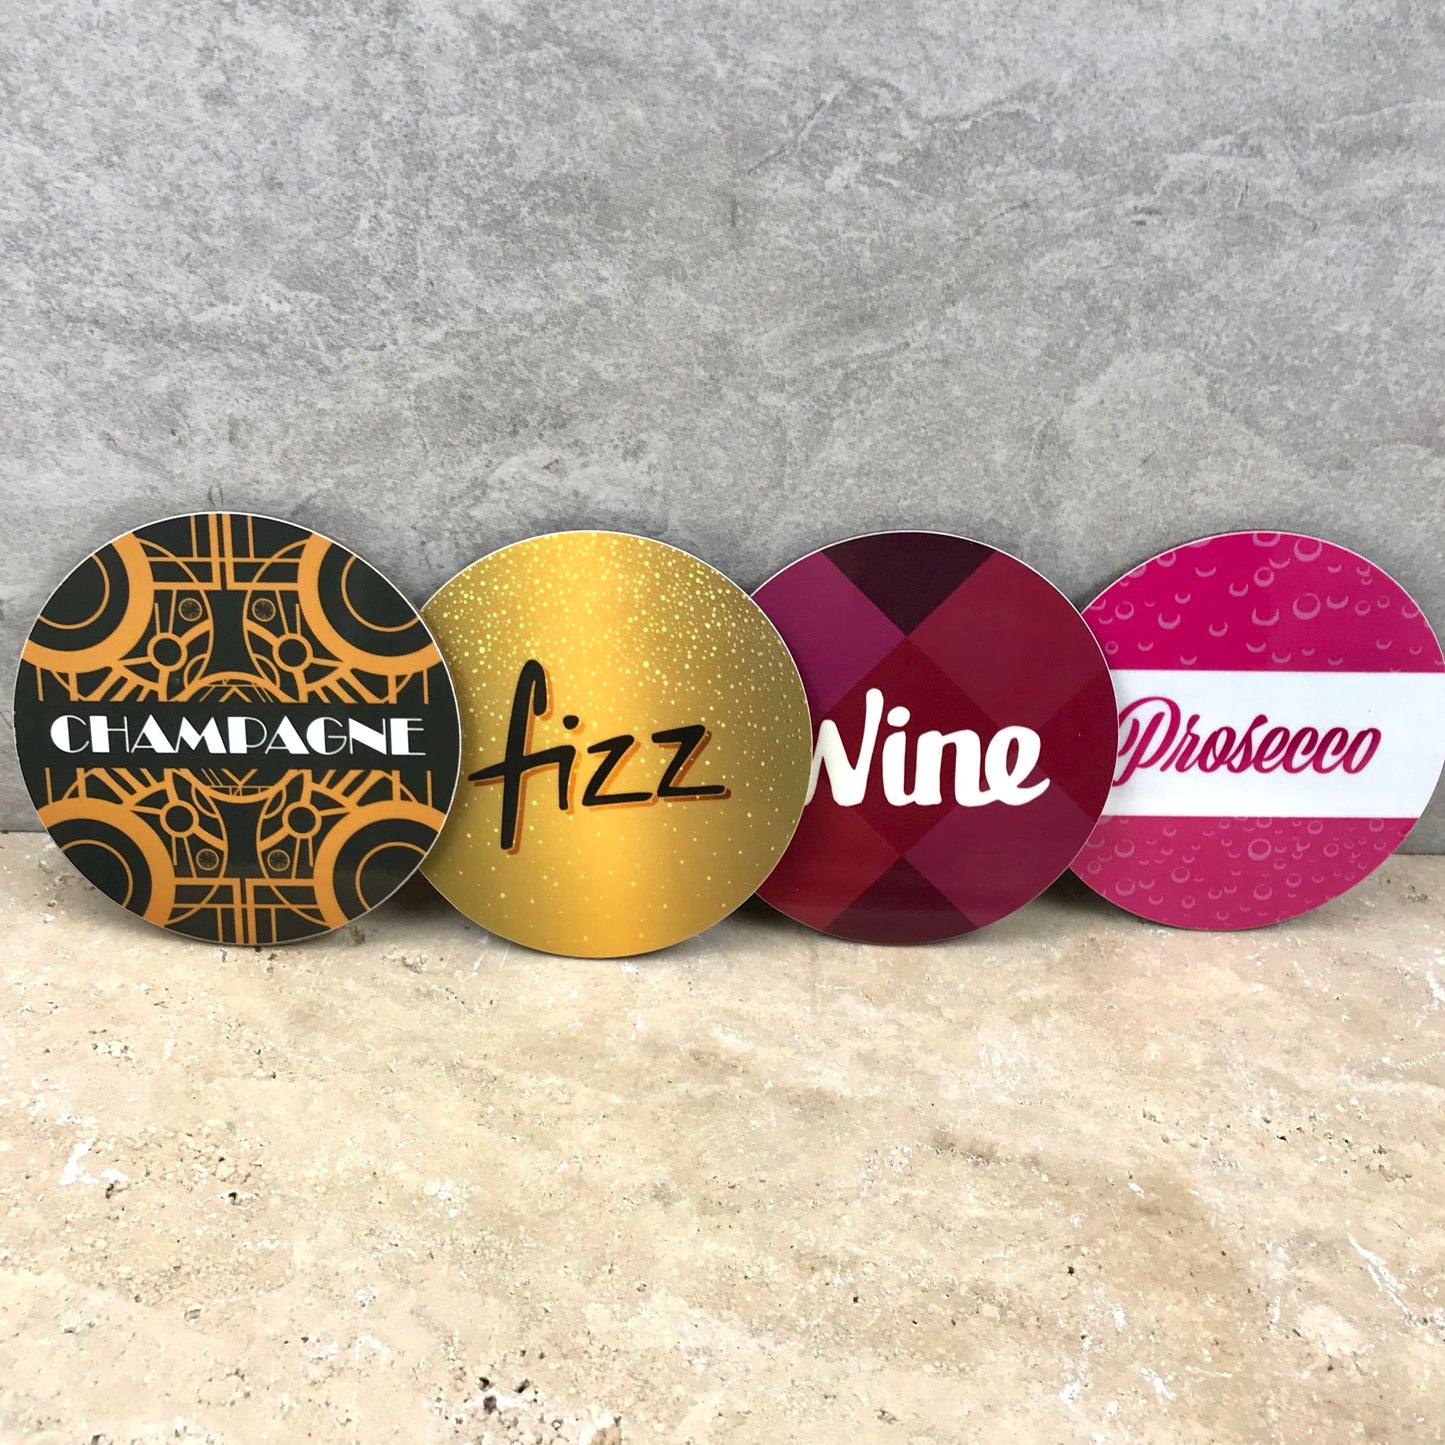 Wine/Prosecco/Champagne coaster set